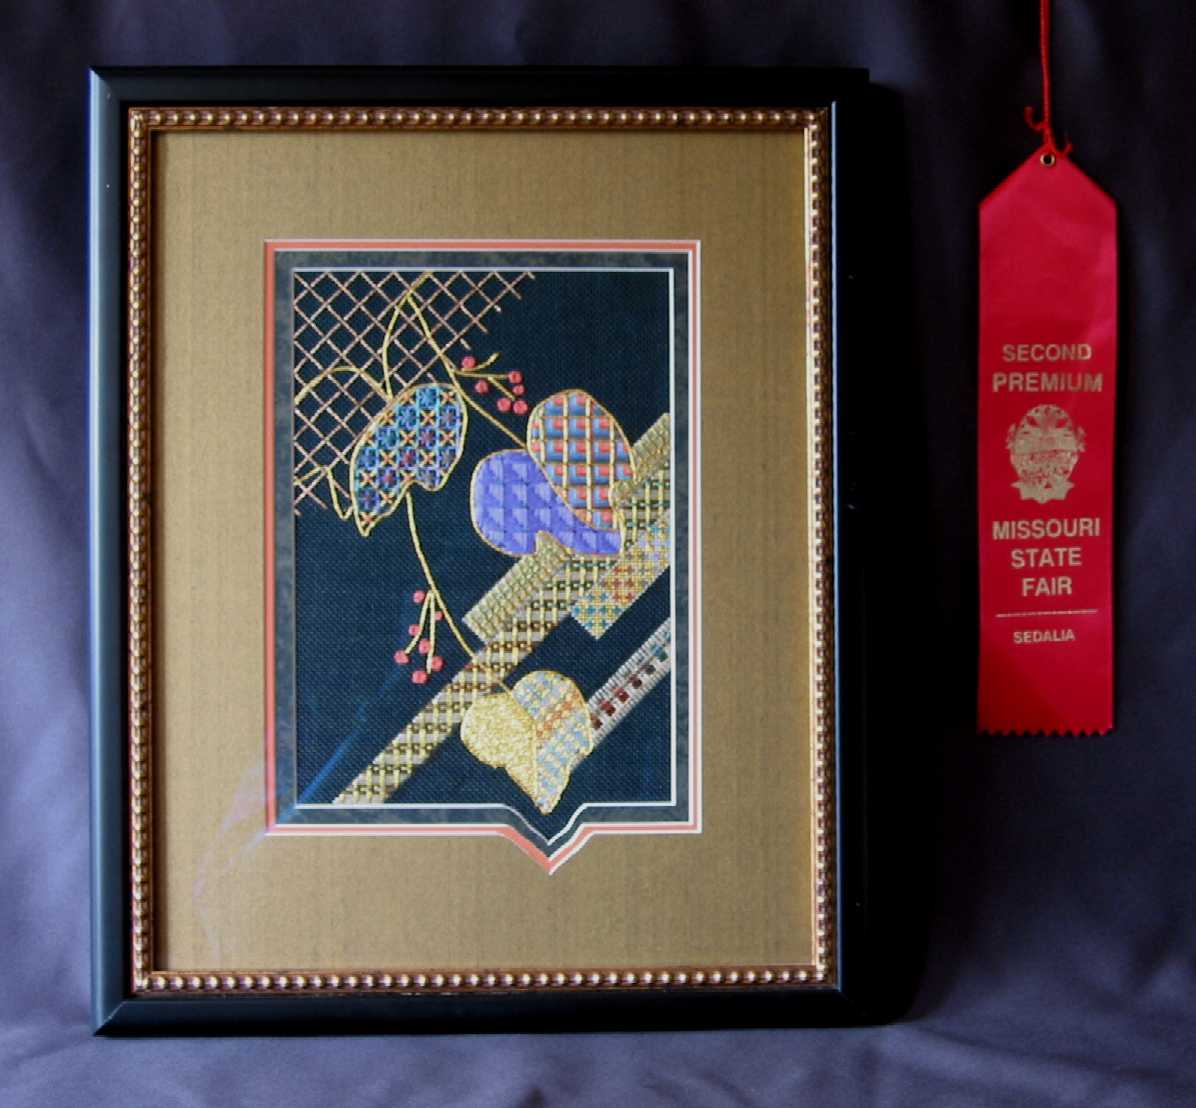 Framed award winning needlepoint with hand cut mat to match needlework design